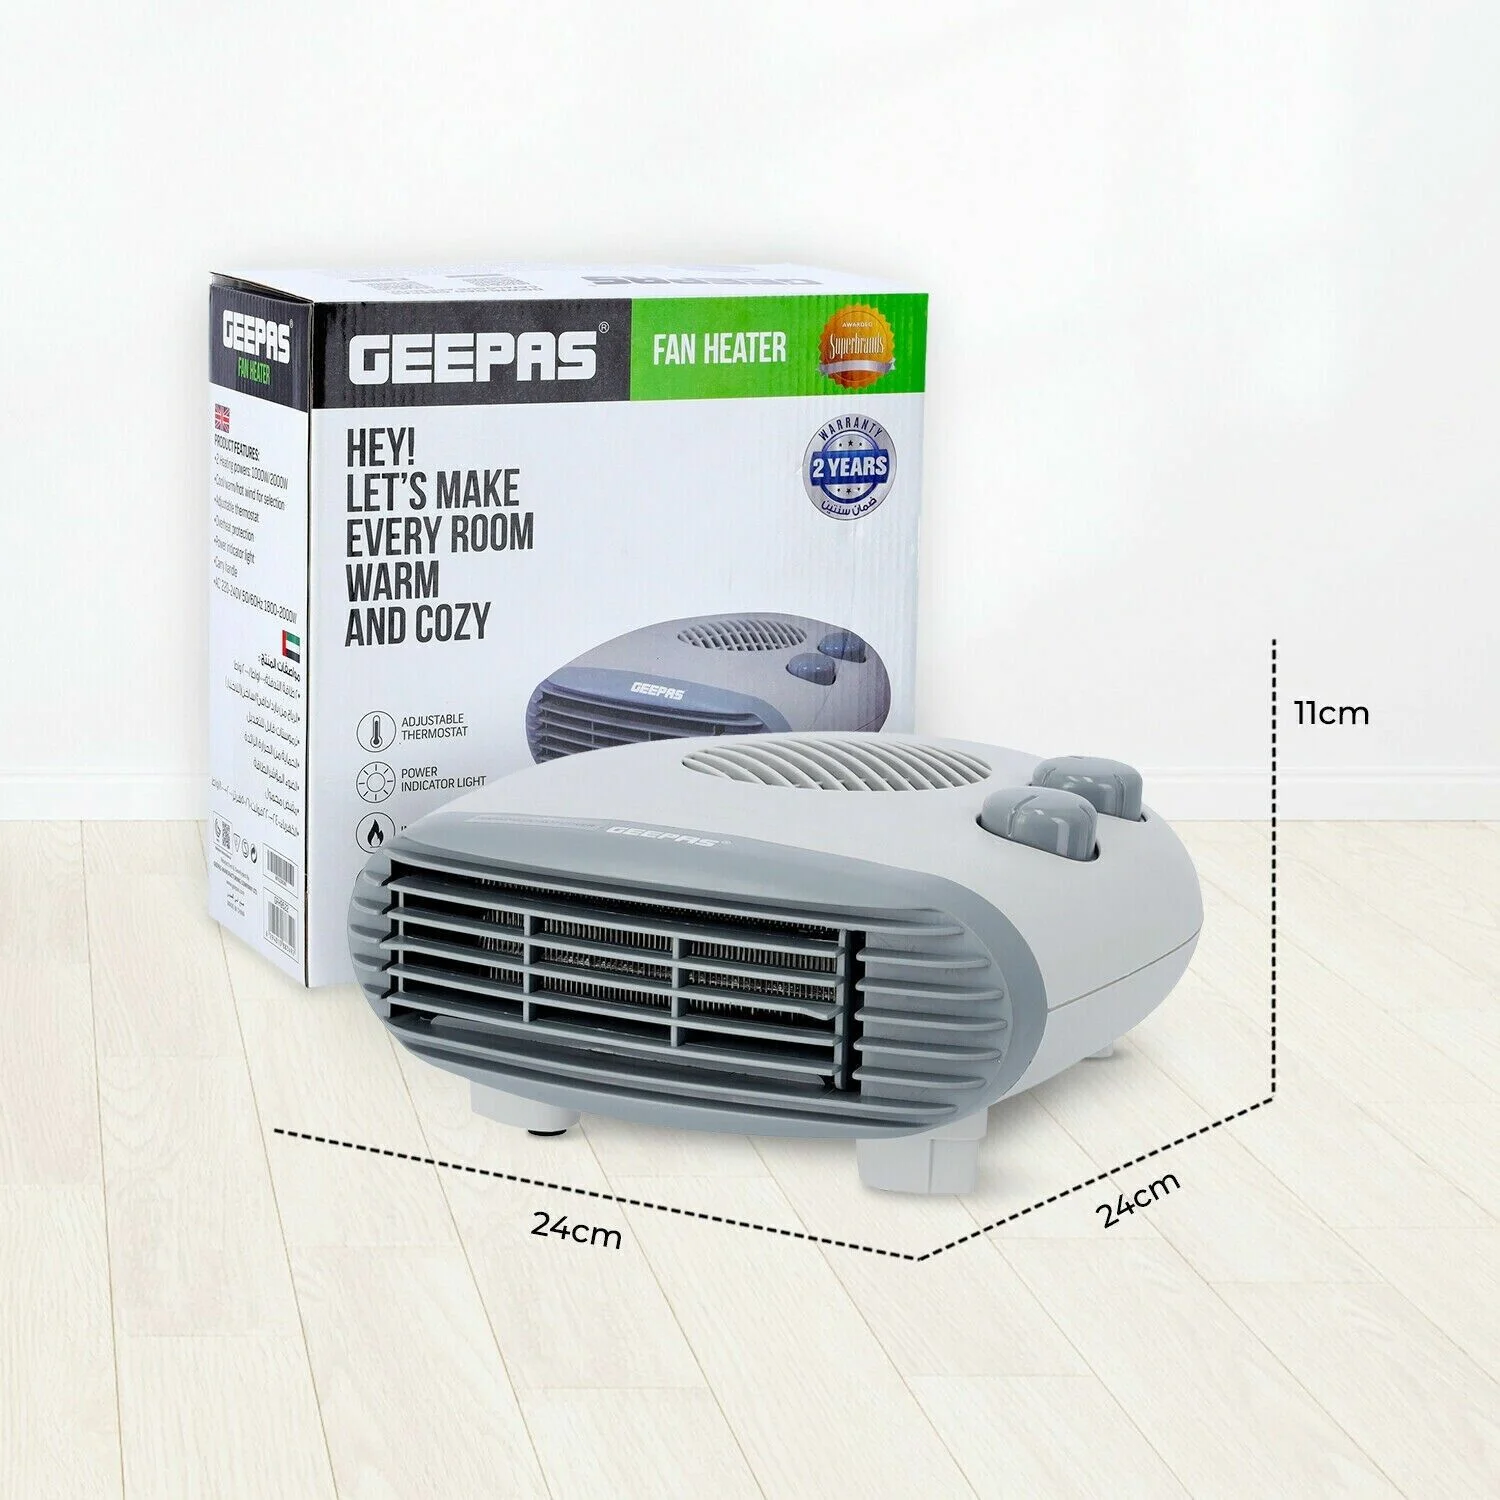 Geepas GFH9522 Fan Heater price in bd